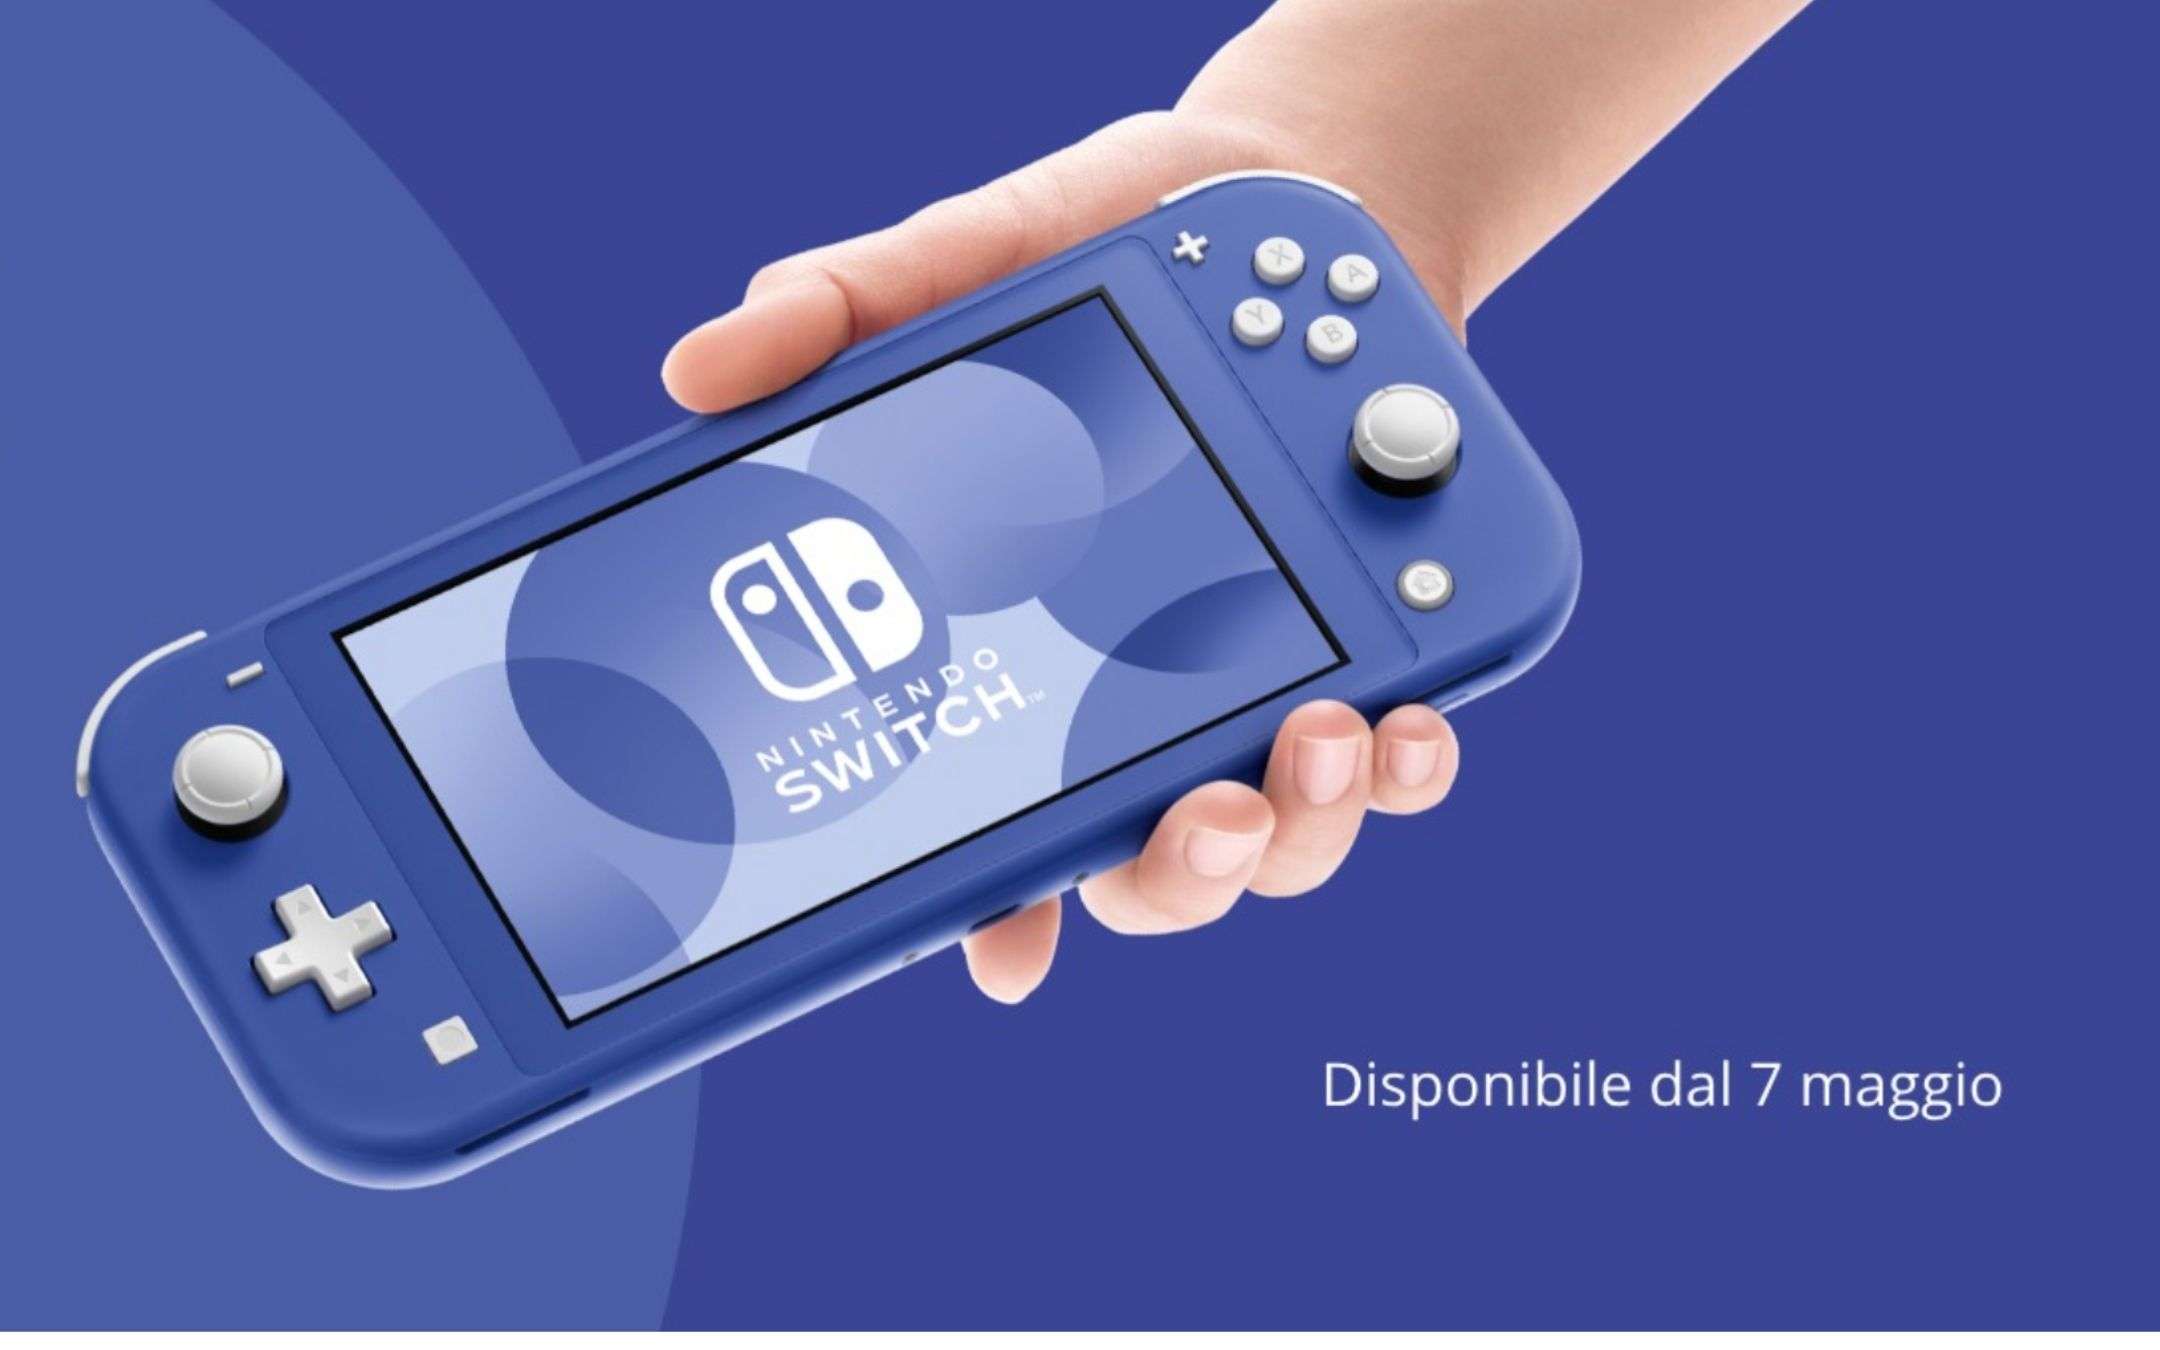 Nintendo Switch blu: disponibile dal 7 maggio